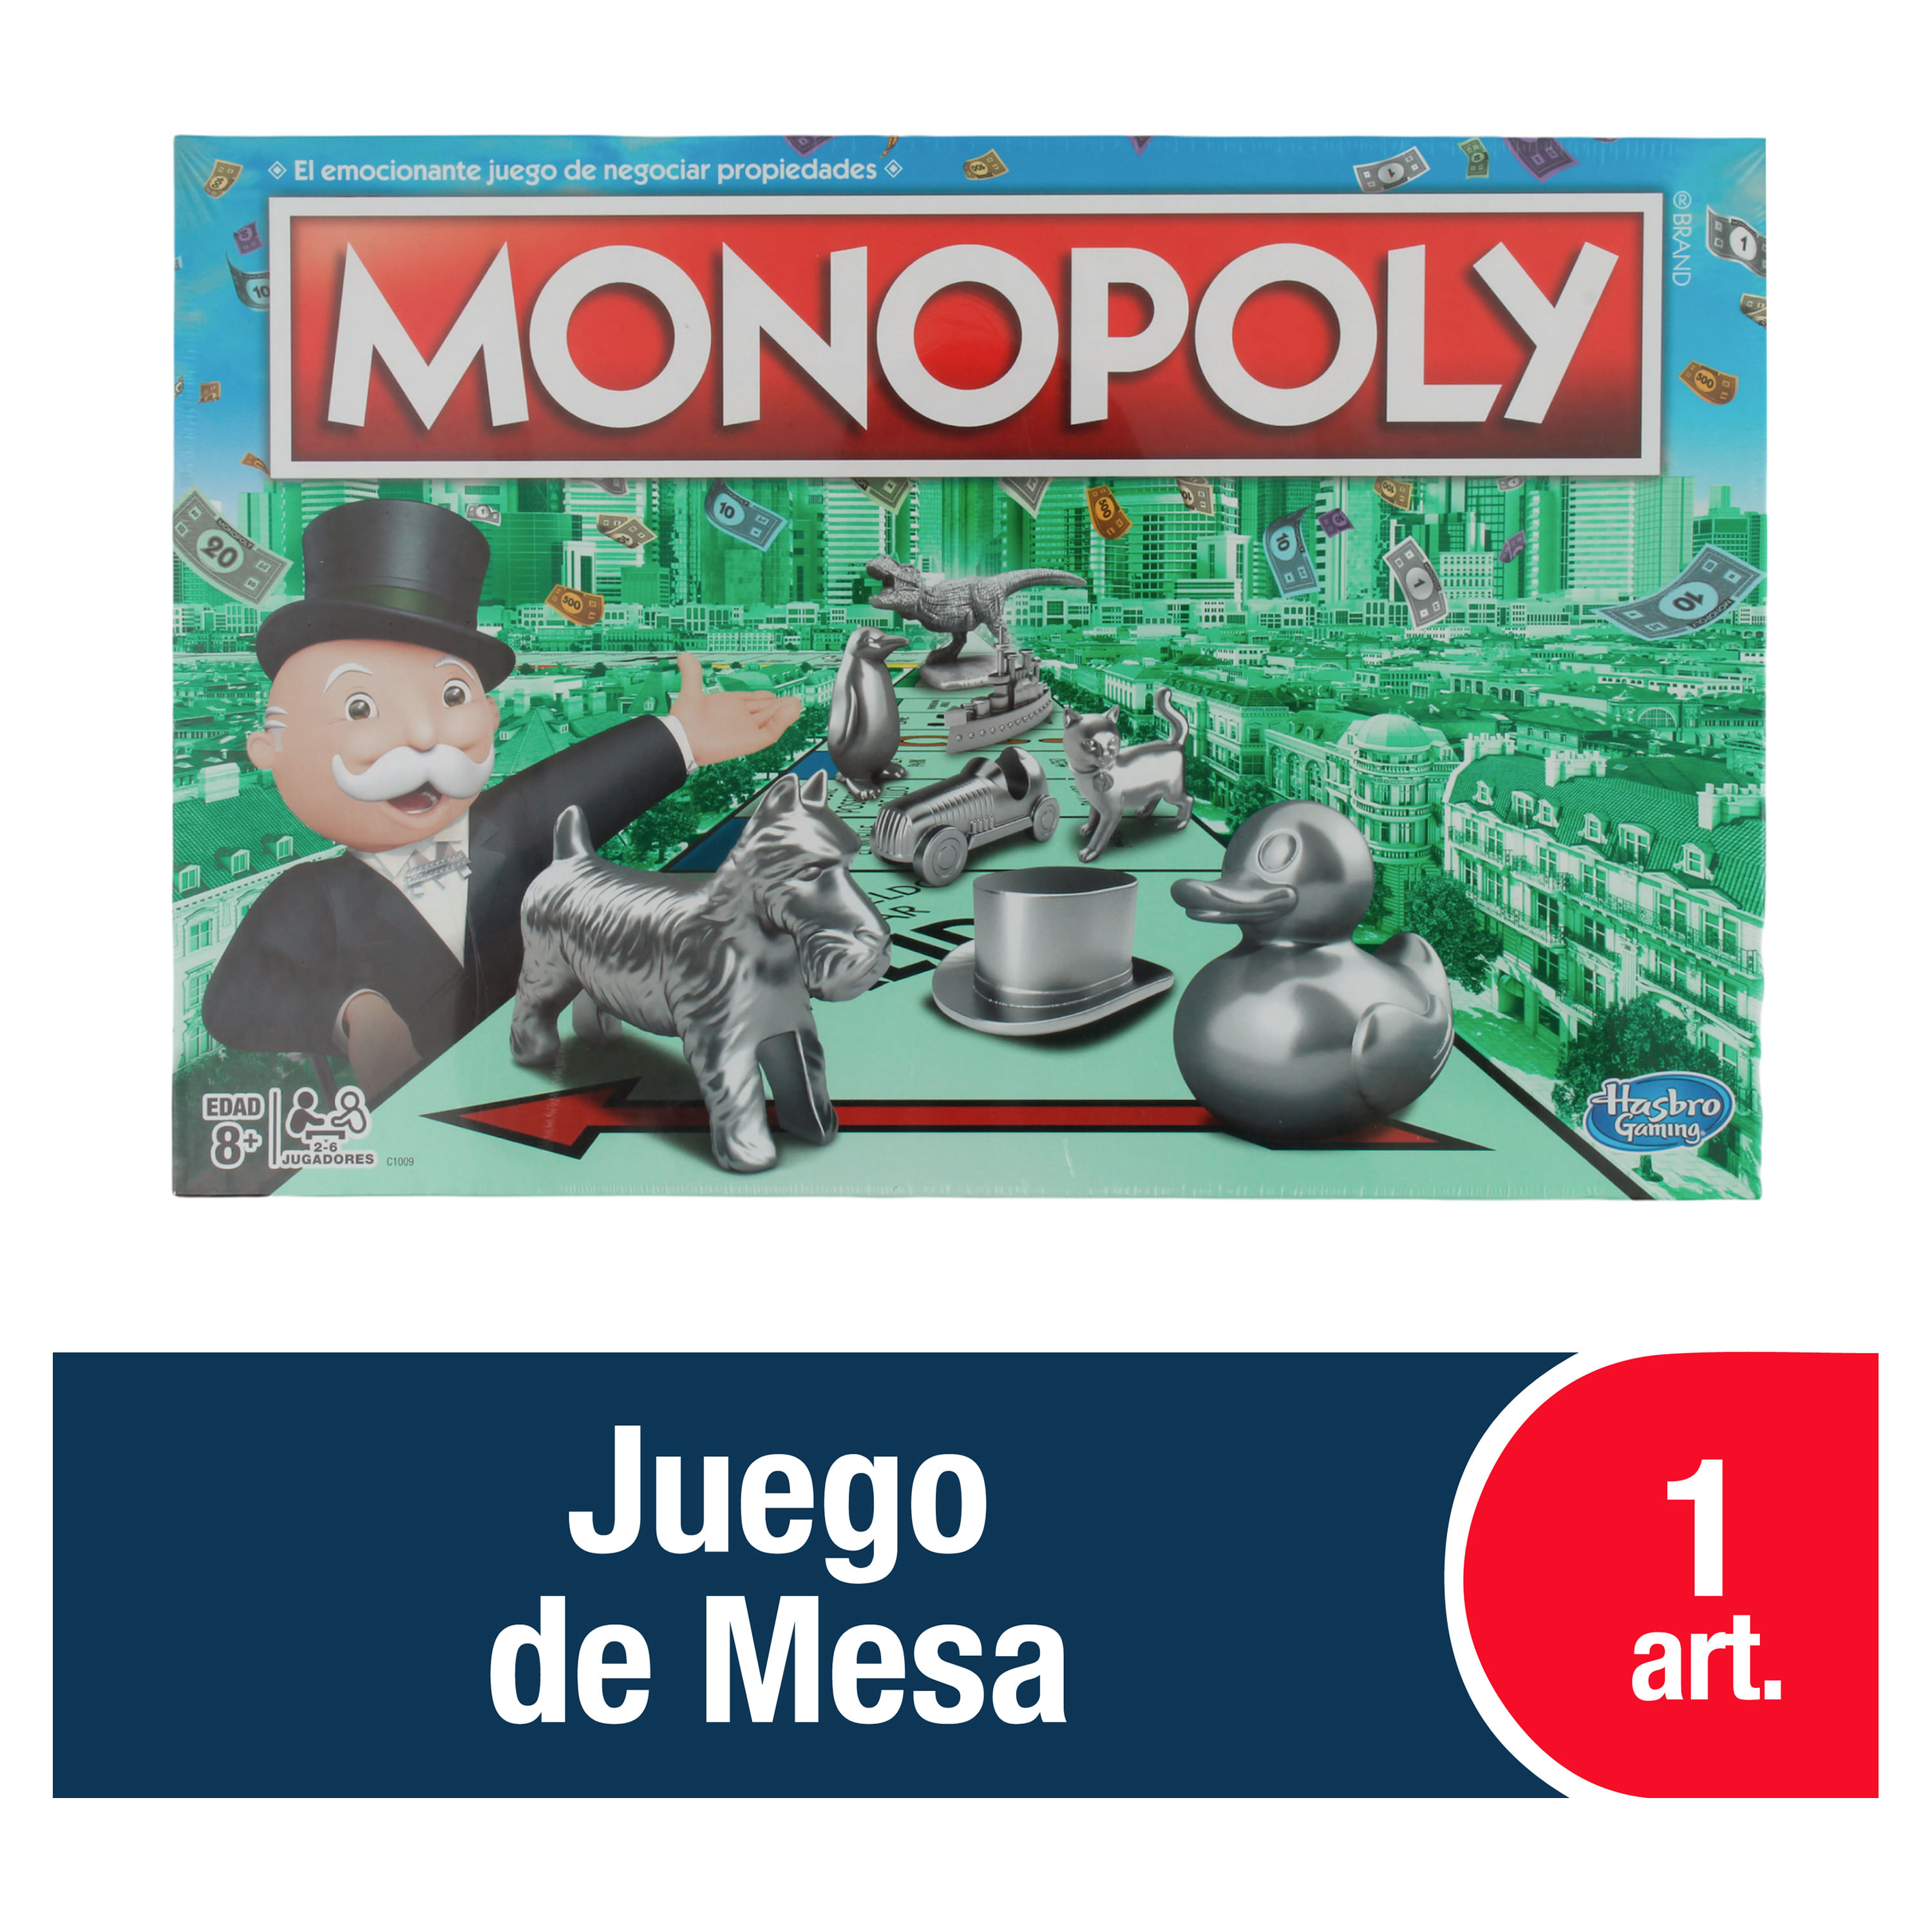 Monopoly Clasico 